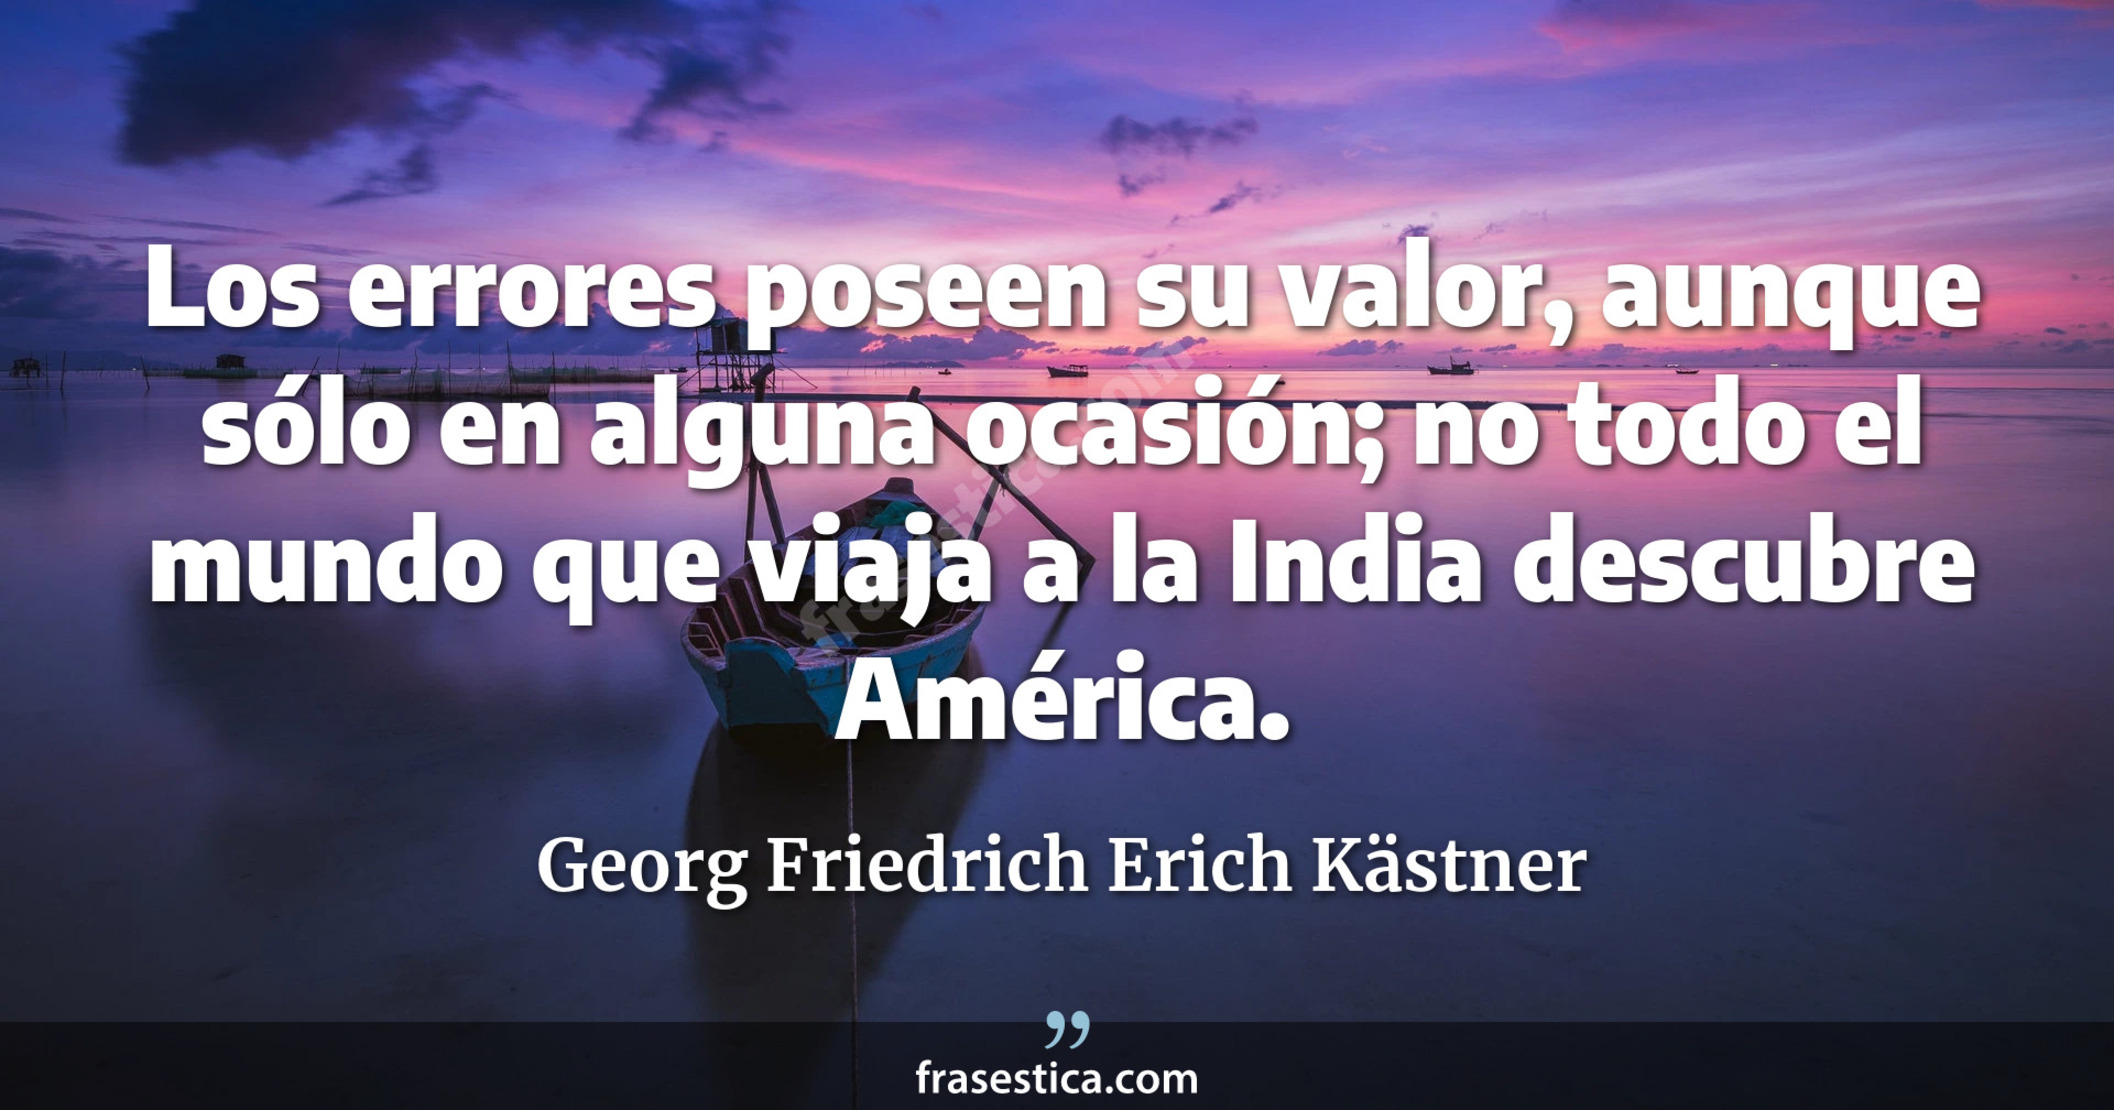 Los errores poseen su valor, aunque sólo en alguna ocasión; no todo el mundo que viaja a la India descubre América. - Georg Friedrich Erich Kästner